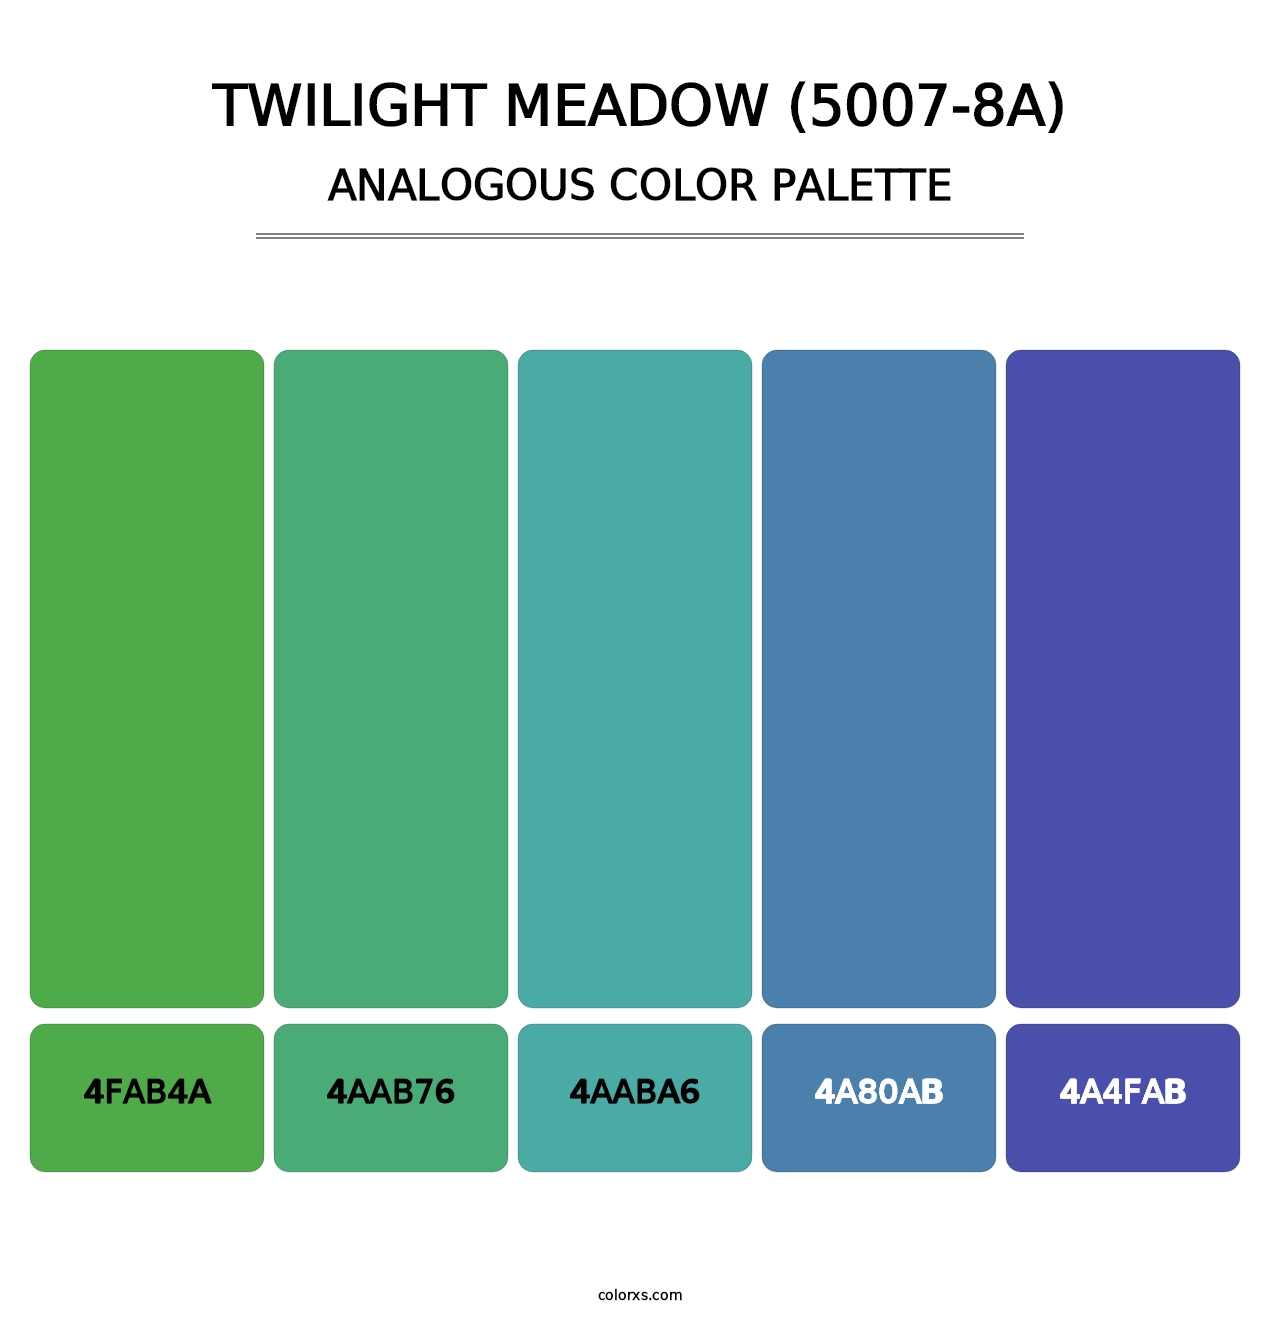 Twilight Meadow (5007-8A) - Analogous Color Palette